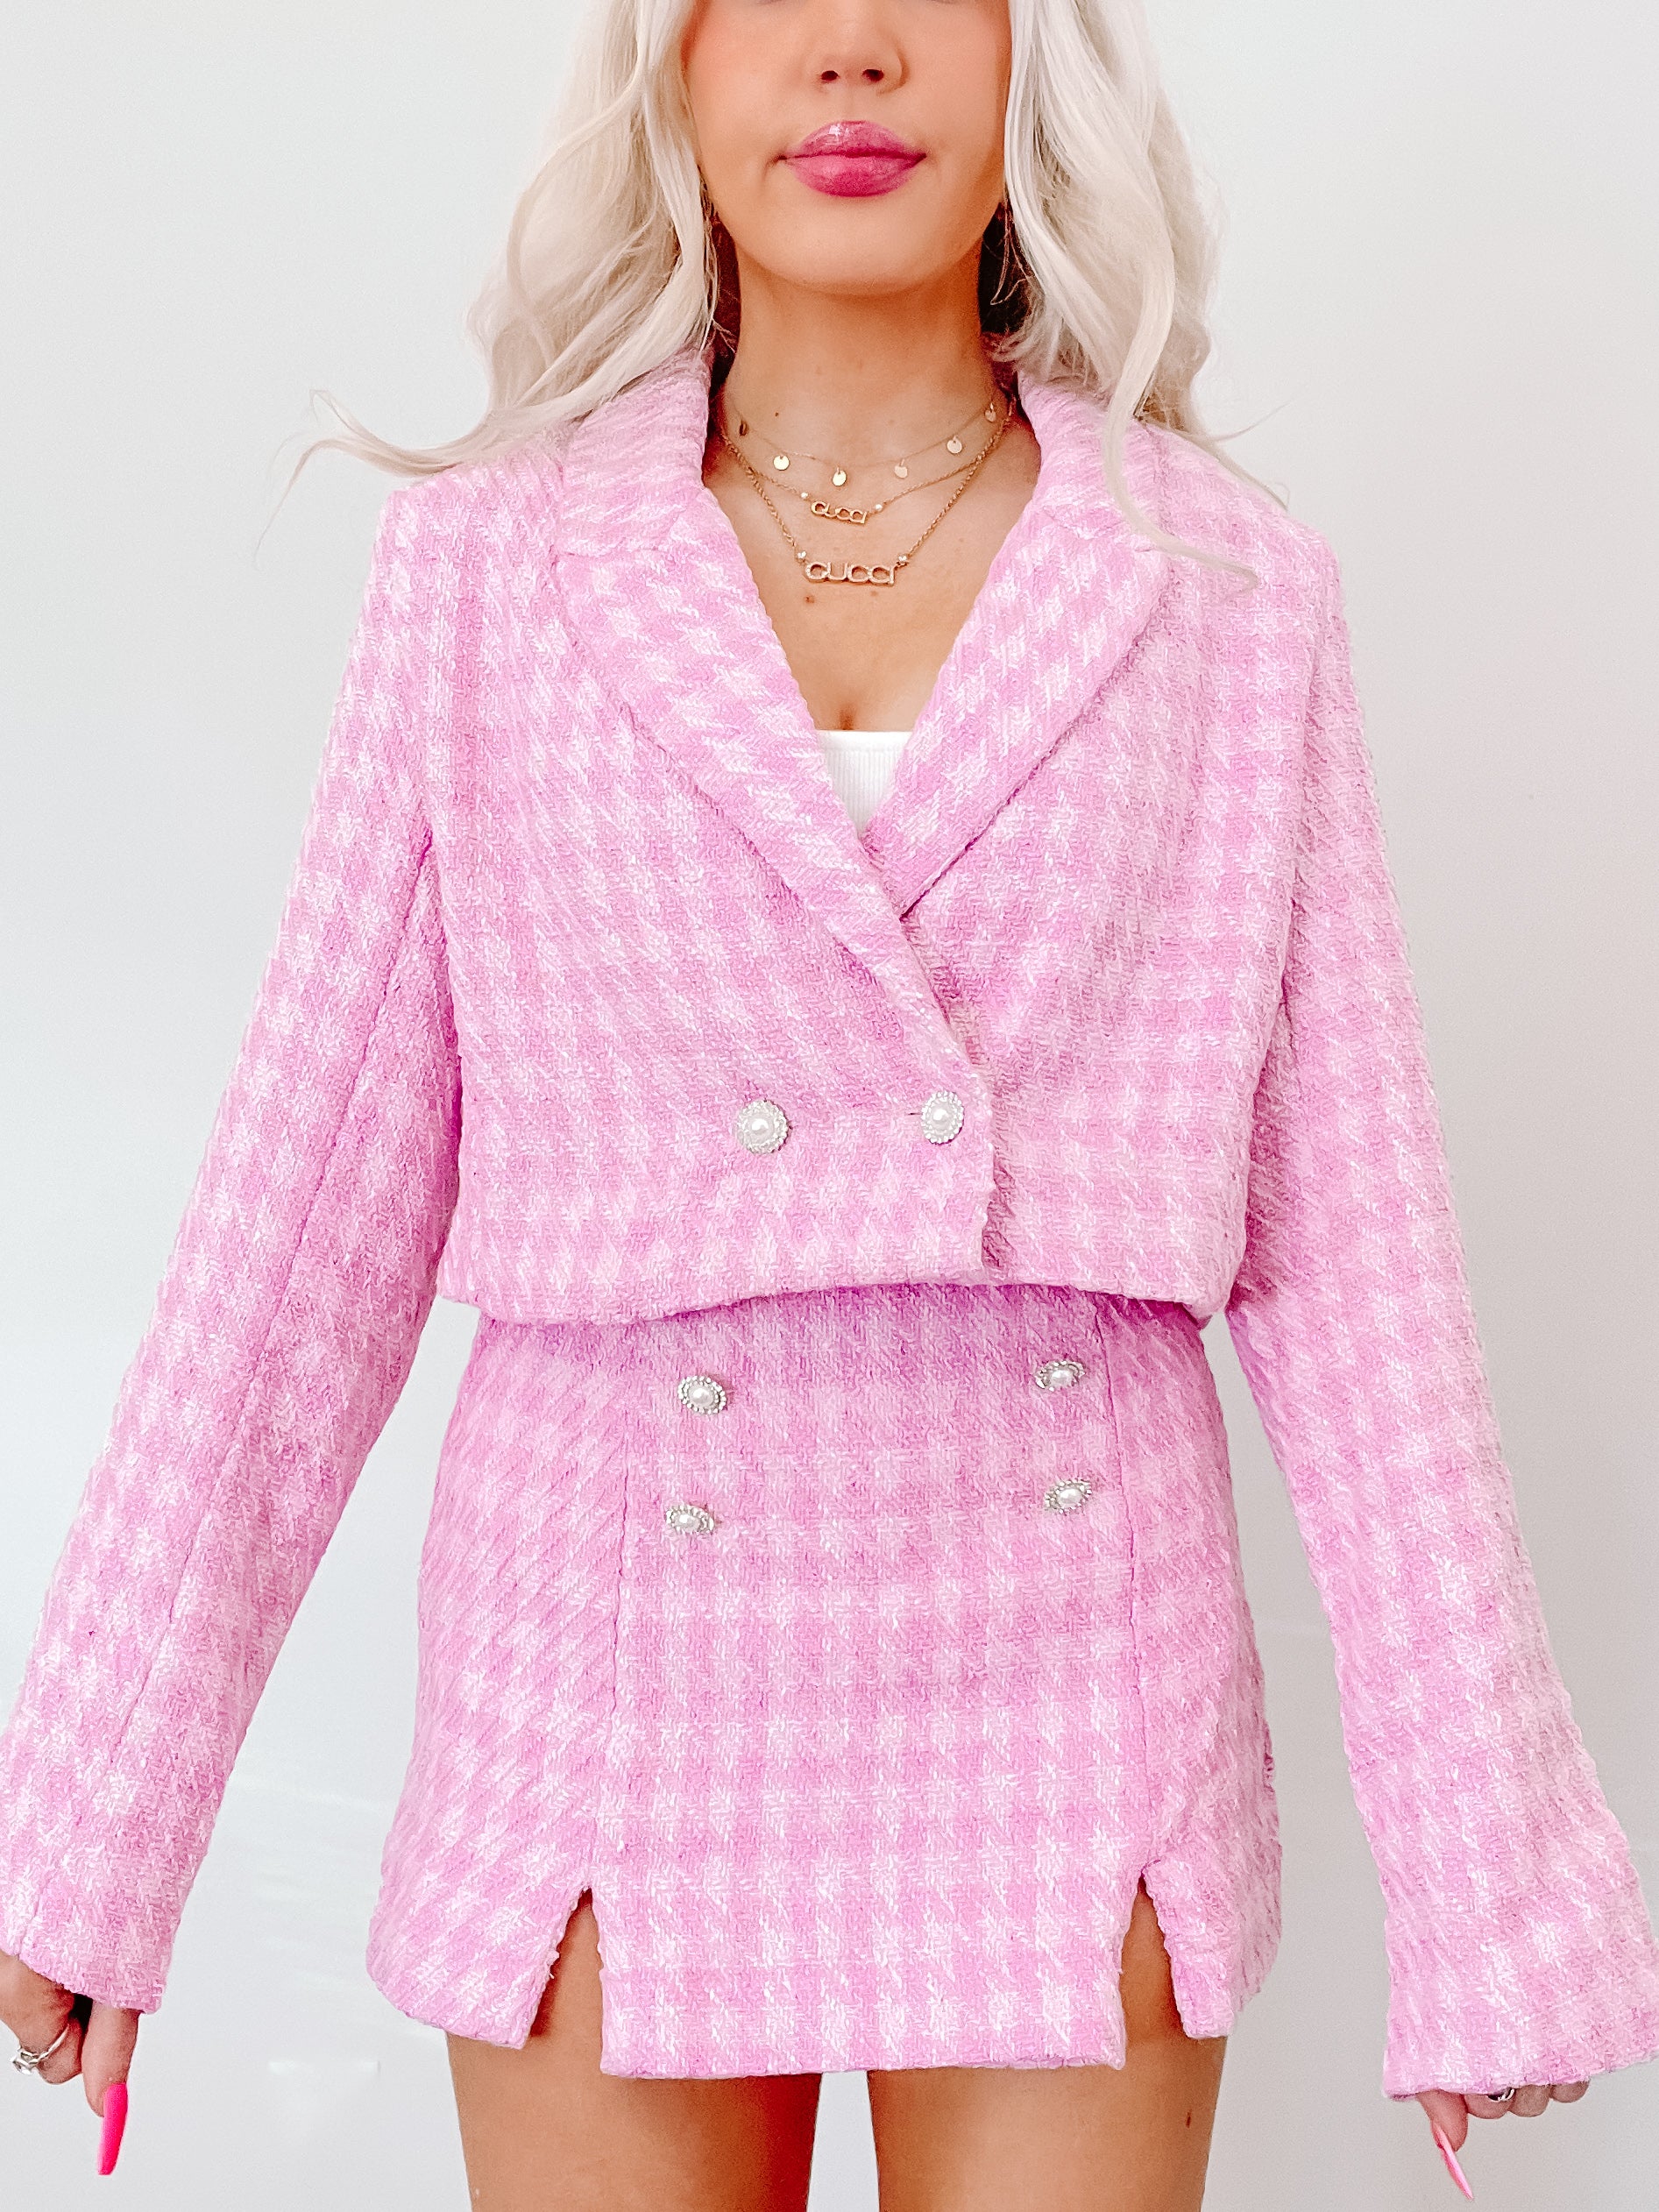 Paris Pink Tweed Set | Sassy Shortcake | sassyshortcake.com